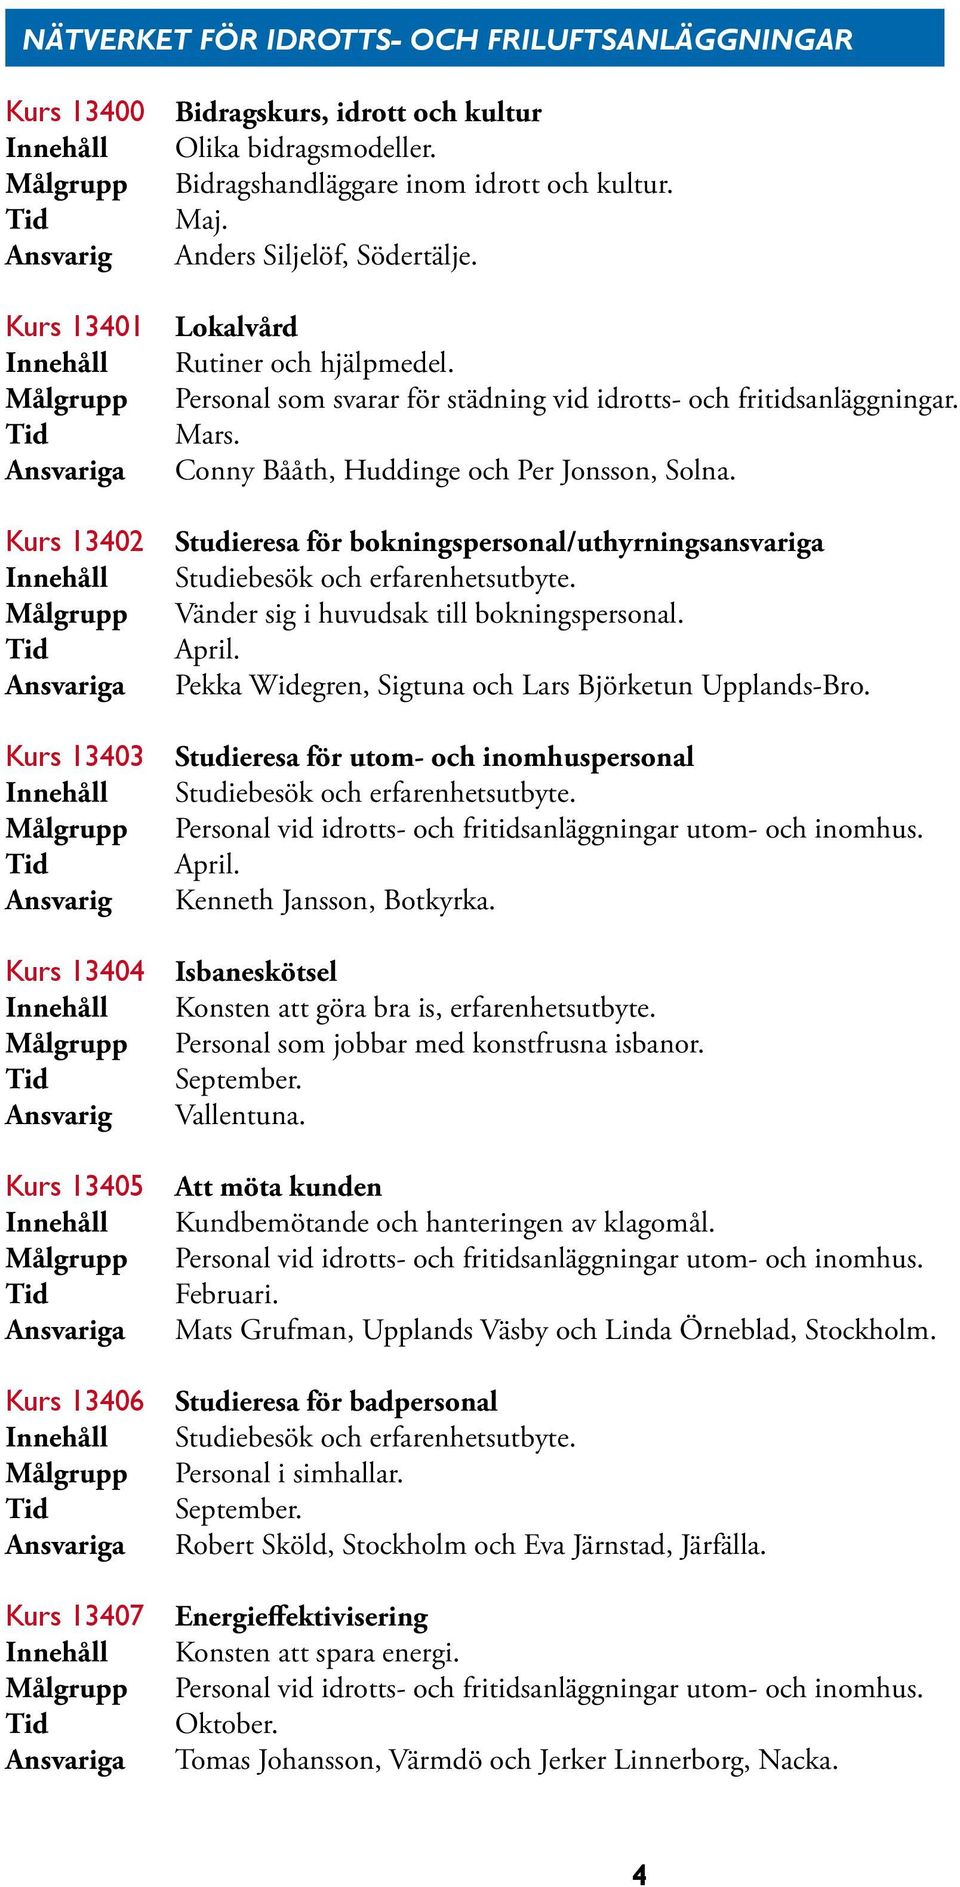 Conny Bååth, Huddinge och Per Jonsson, Solna. Studieresa för bokningspersonal/uthyrningsansvariga Studiebesök och erfarenhetsutbyte. Vänder sig i huvudsak till bokningspersonal. April.